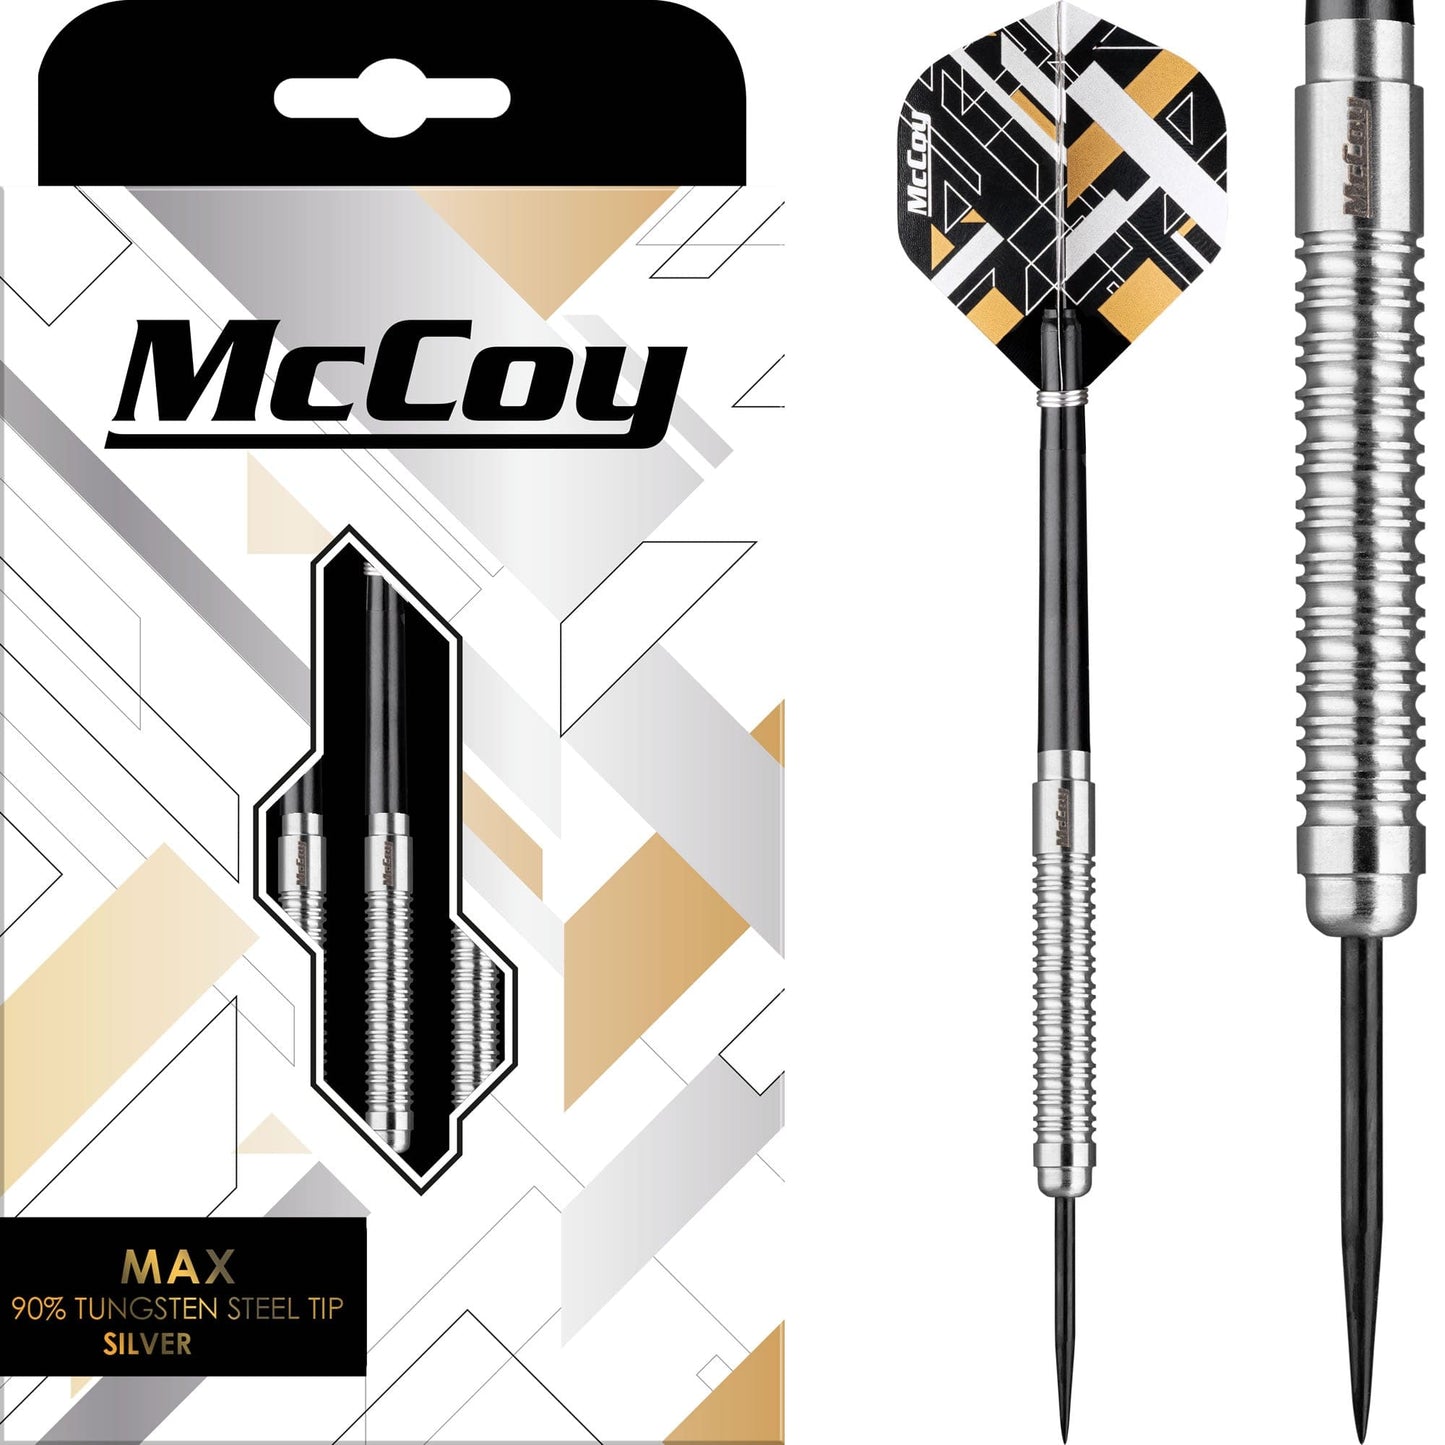 McCoy MAX - 90% Steel Tip Tungsten - Silver 22g